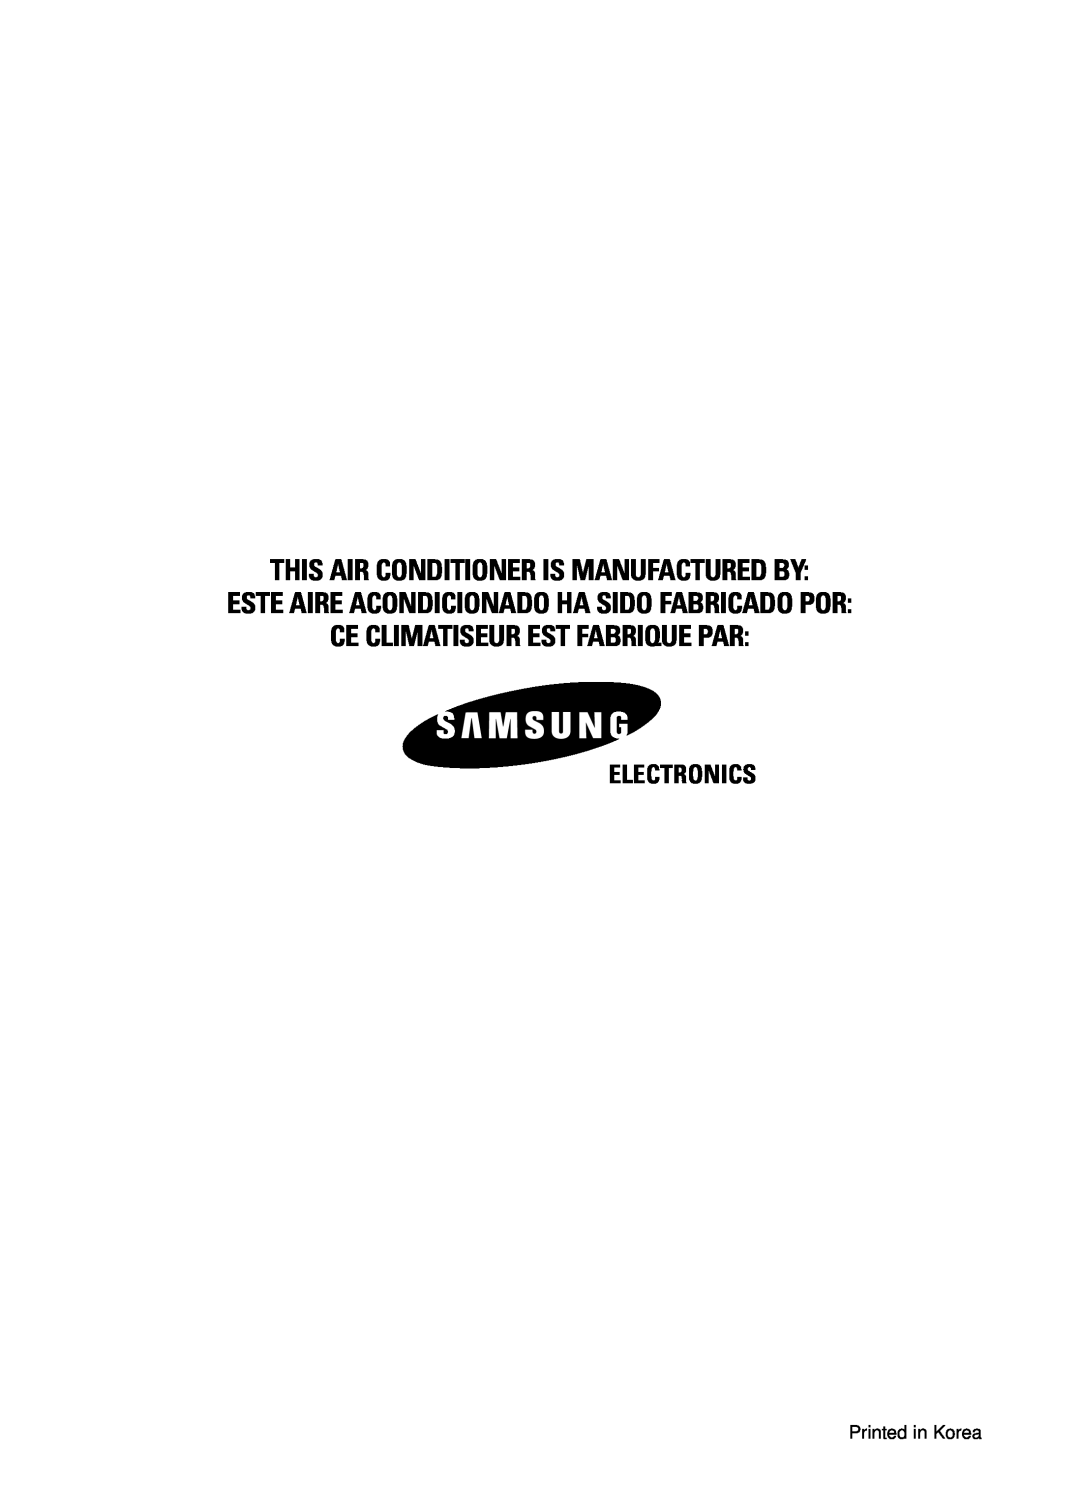 Samsung AD18B1C09 This Air Conditioner Is Manufactured By, Este Aire Acondicionado Ha Sido Fabricado Por, Electronics 